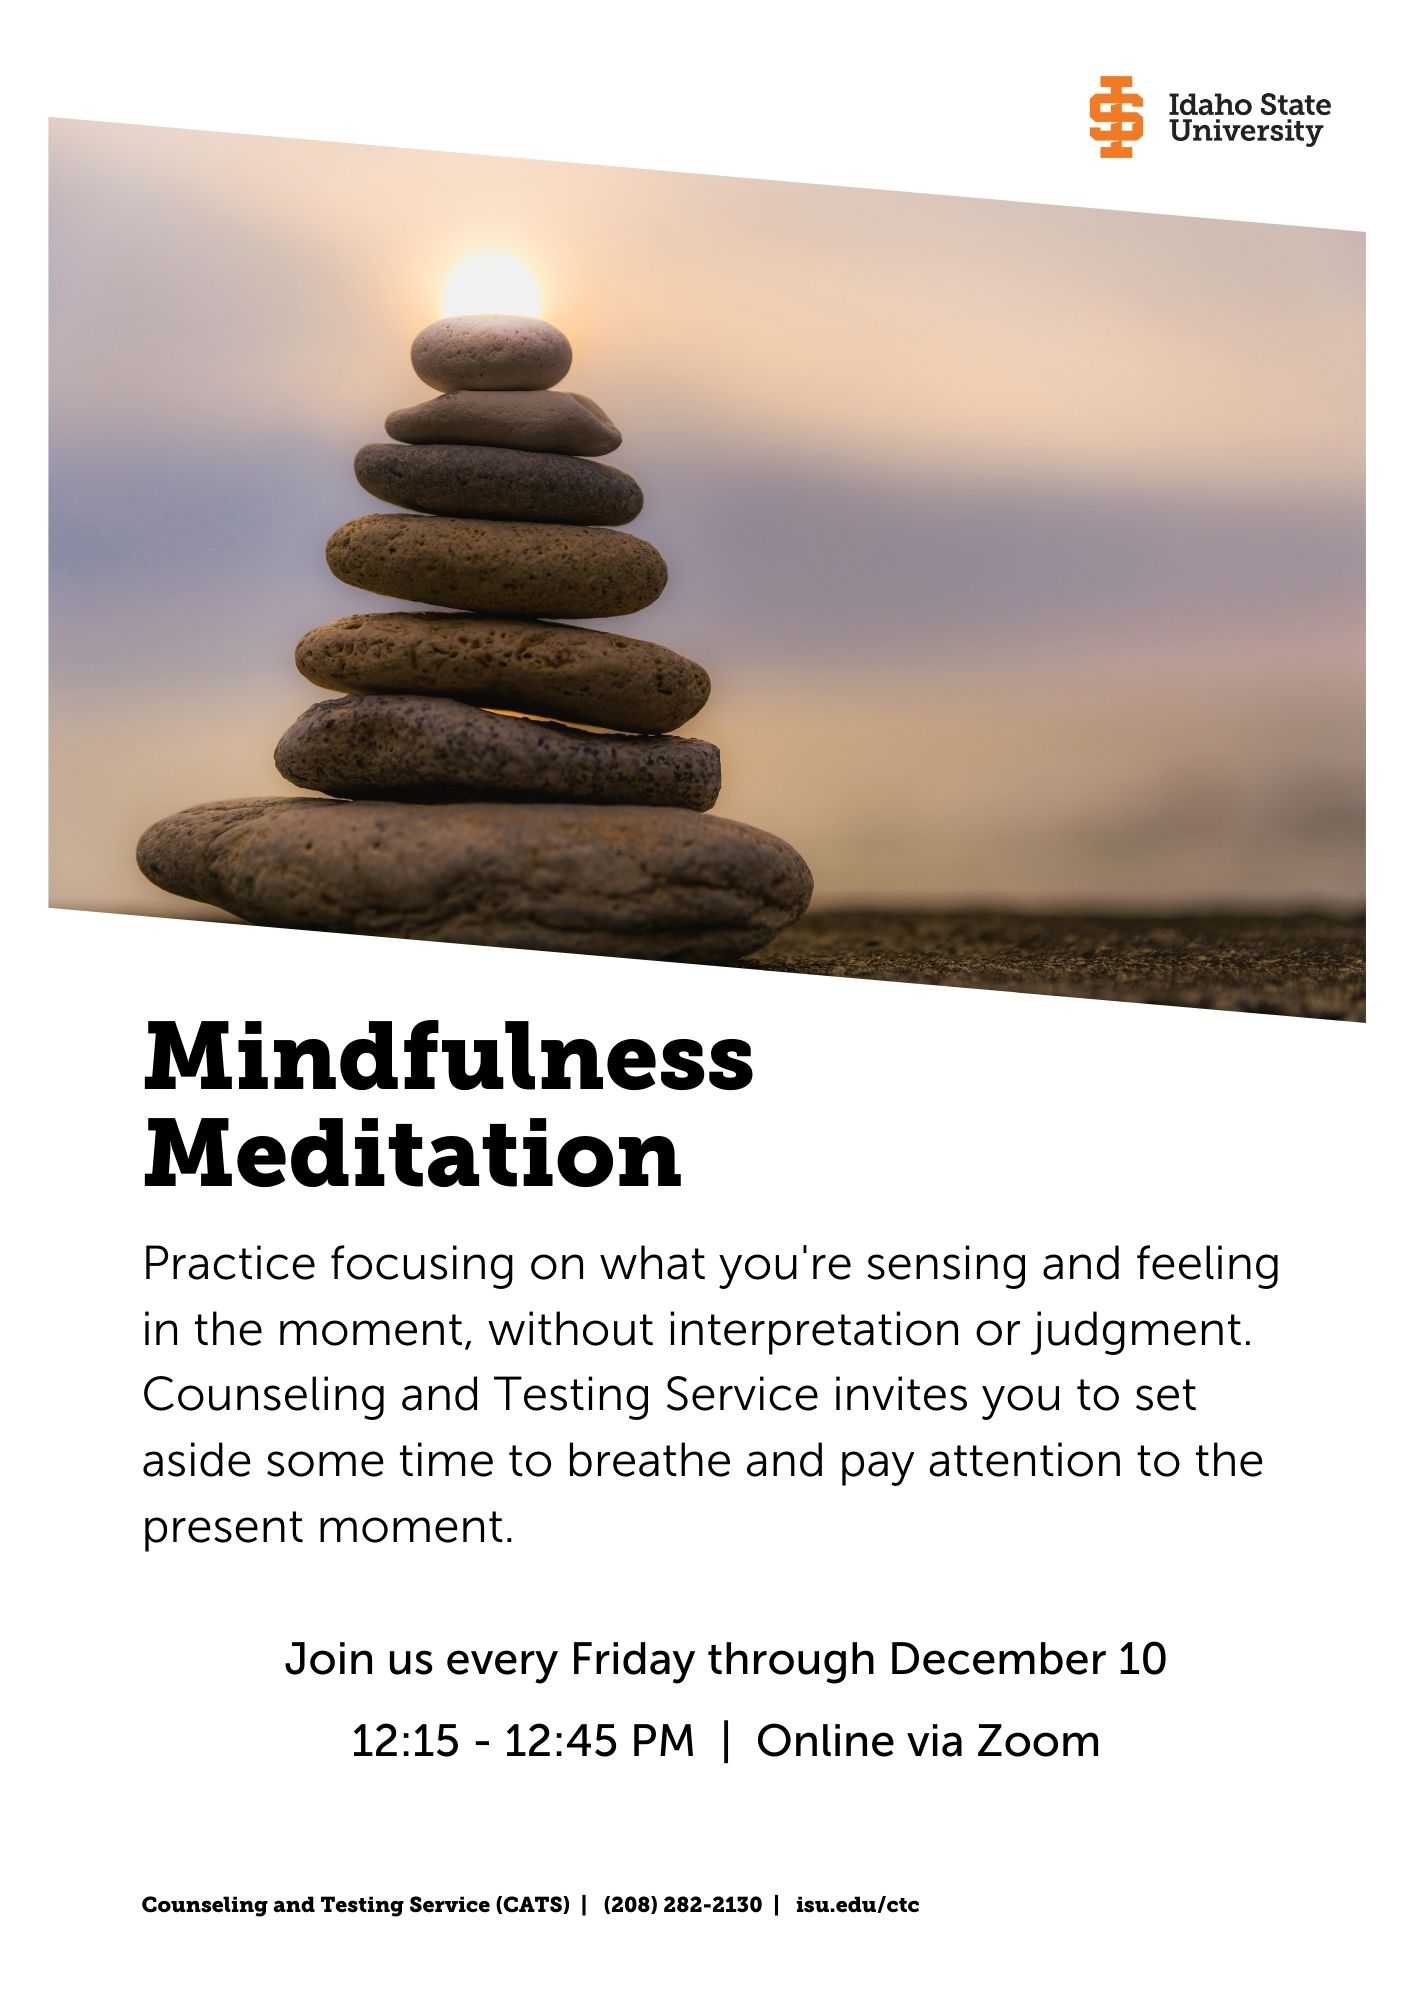 Mindfulness Meditation Poster